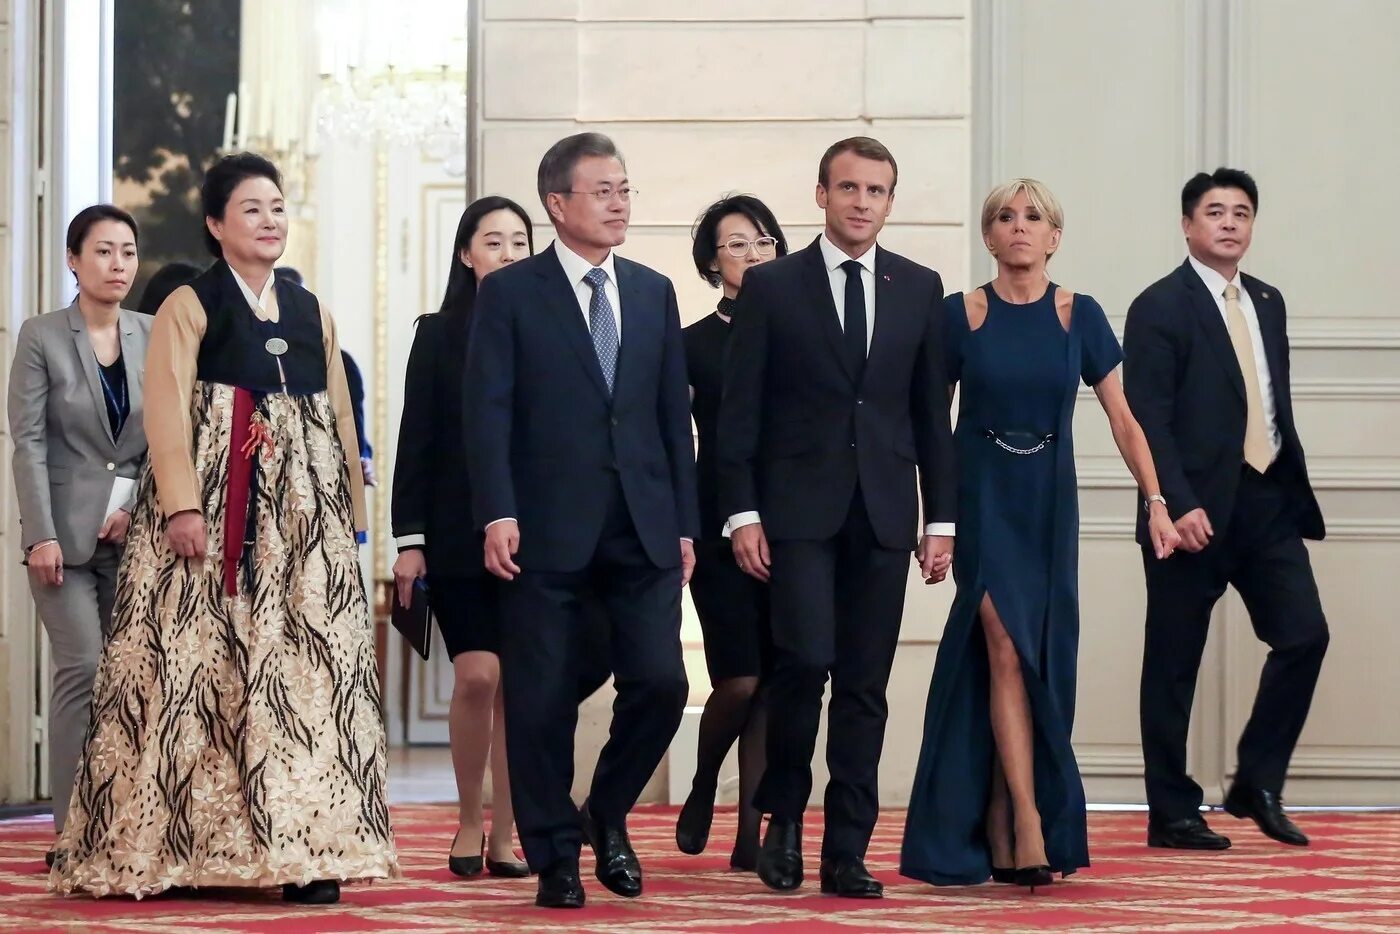 Первая леди страны. Первые леди Европы. Премьер-министр Люксембурга первые леди. Первая леди Южной Кореи и Макрон. Жены глав государств.